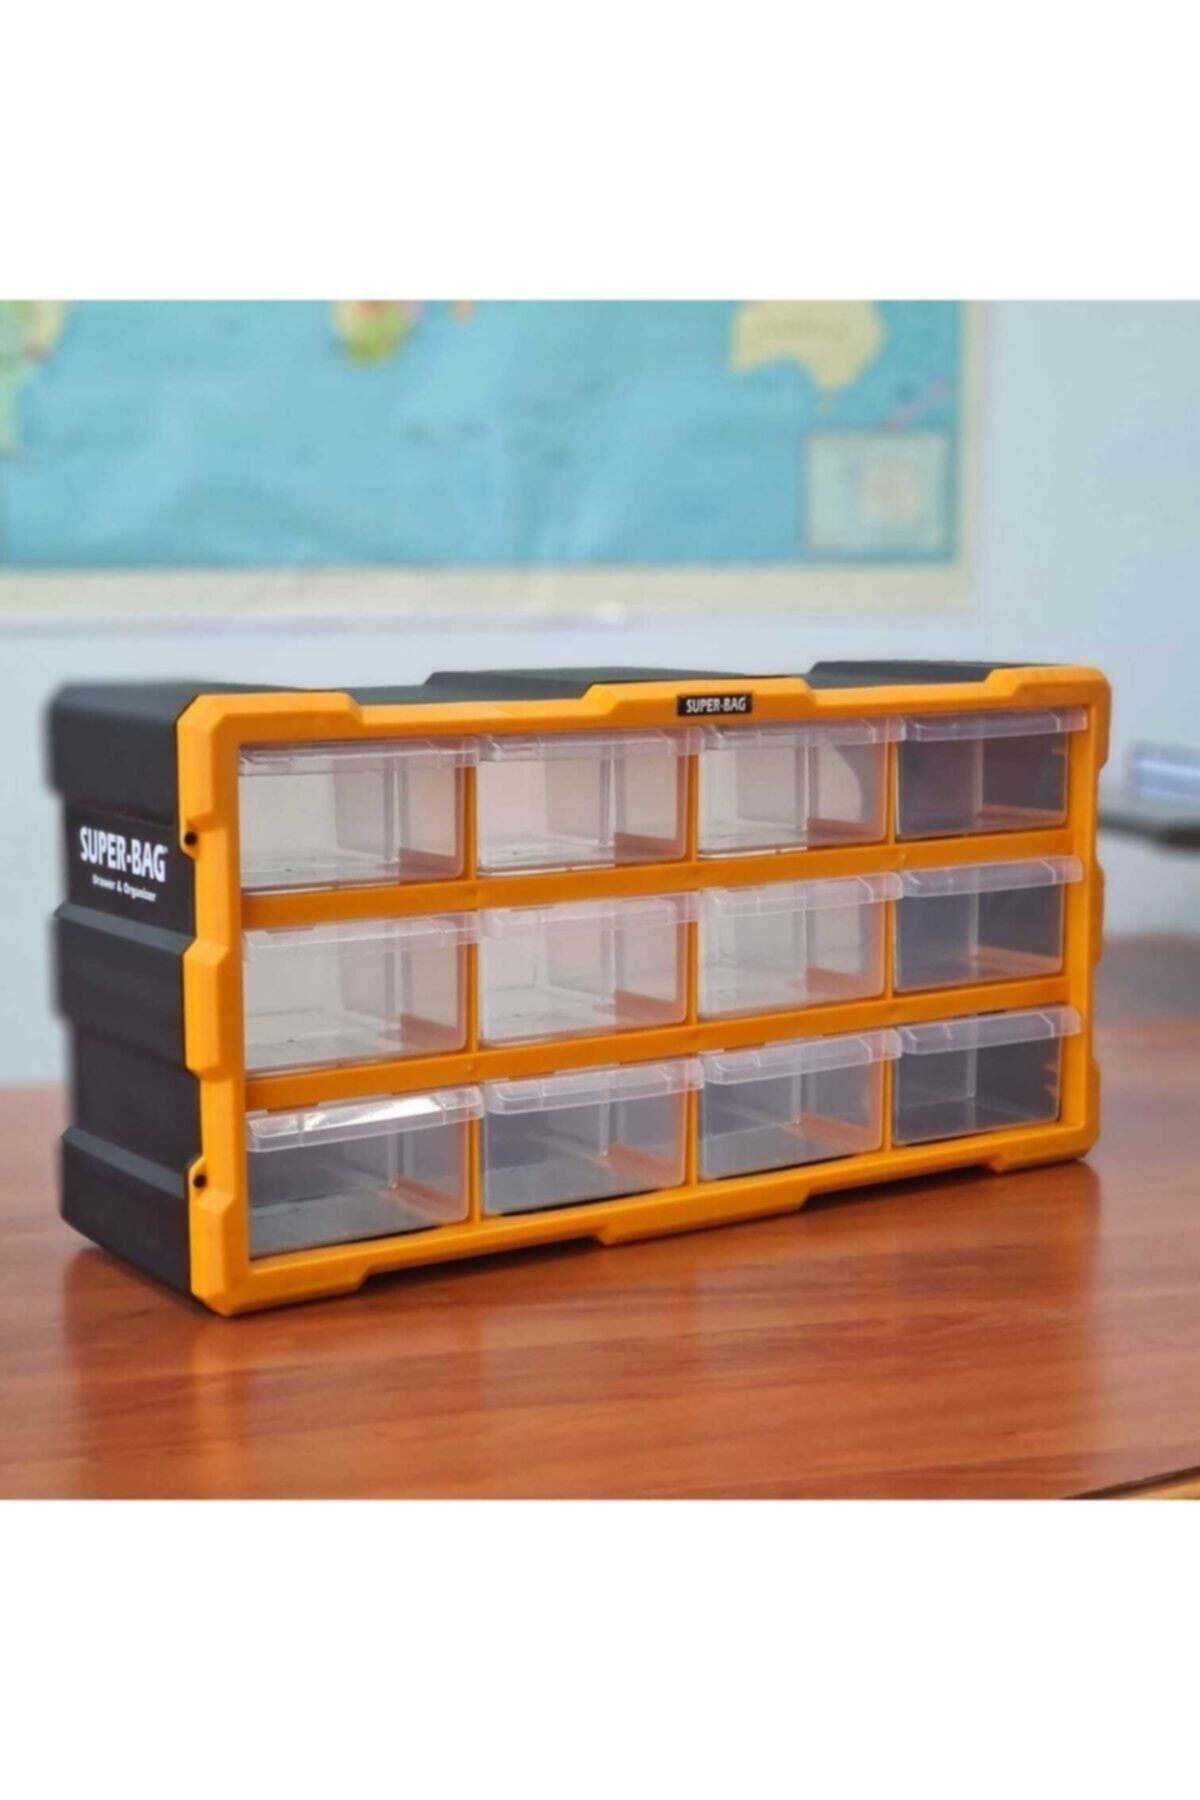 Süper Bag Büyük 12'li Çekmeceli Monoblok Çekmeceli Kutu Organizer Mono Blok Vida Hobi Takım Çantası